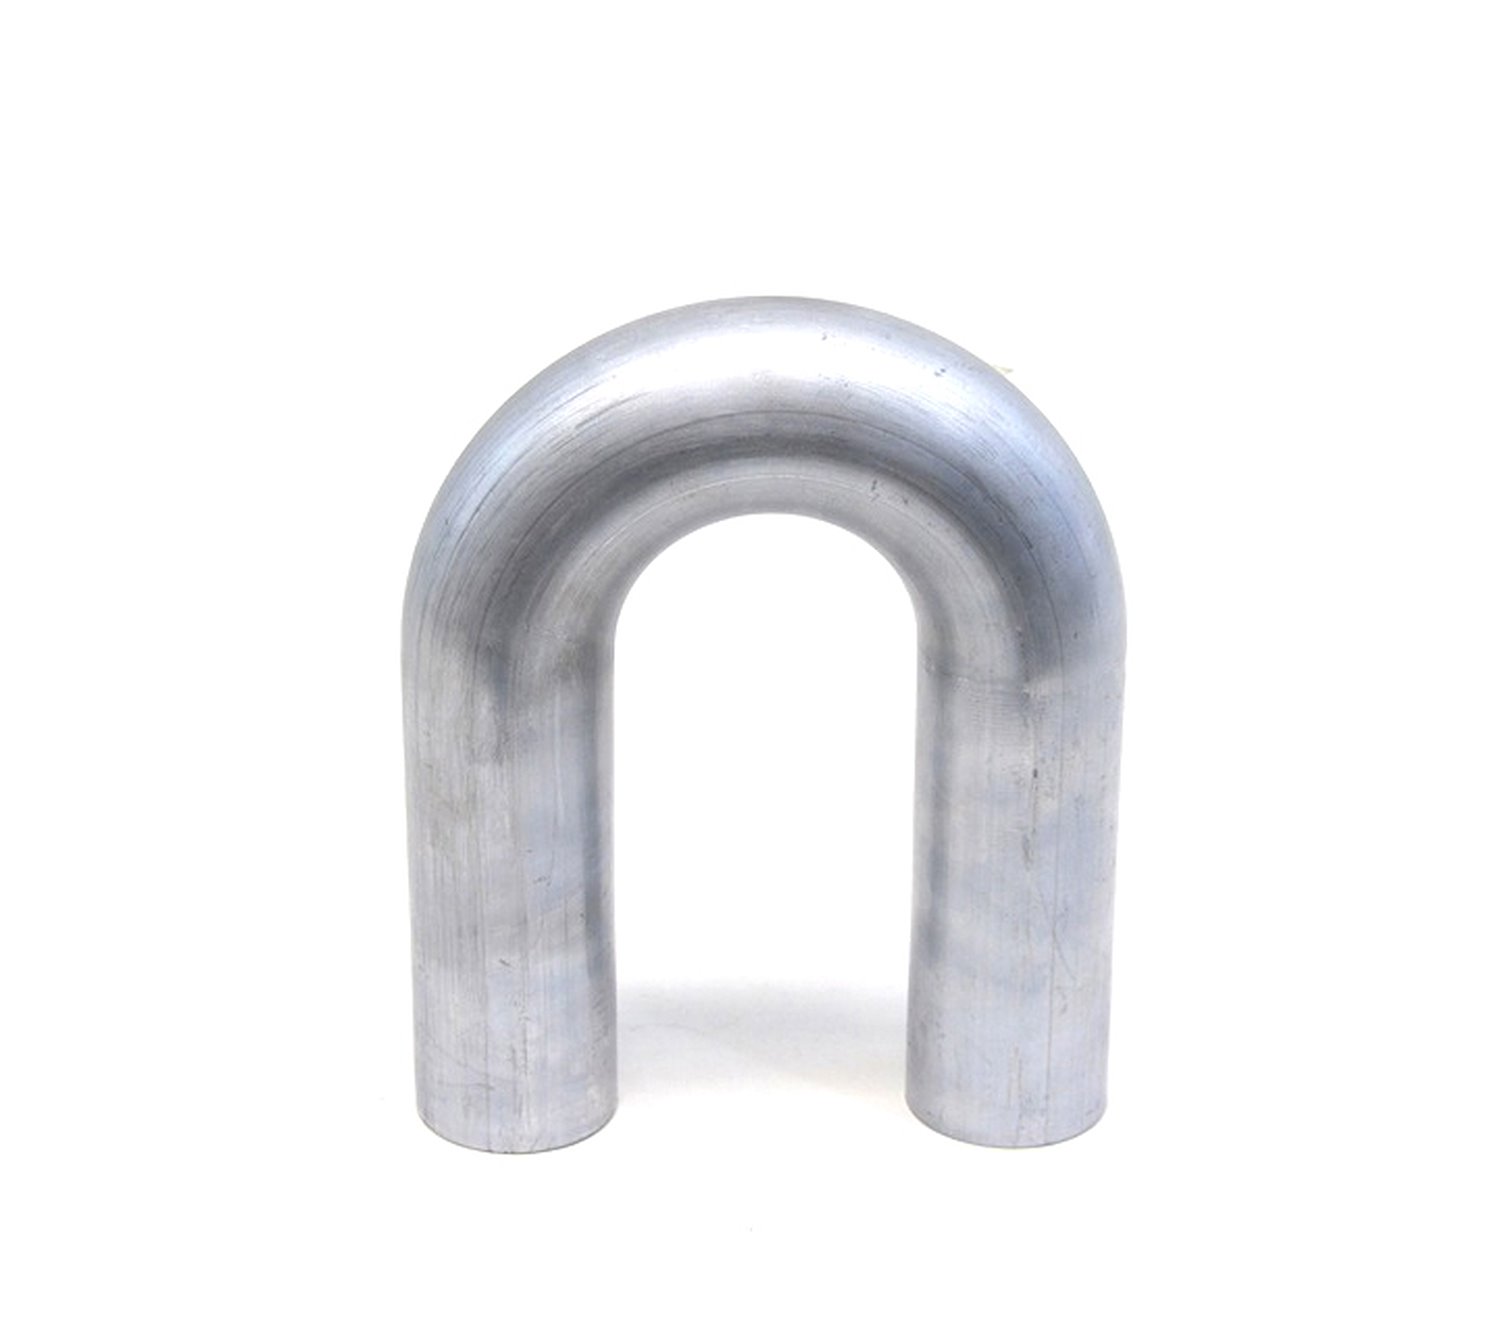 AT180-325-CLR-45 Aluminum Elbow Tube, 6061 Aluminum, 180-Degree U Bend Elbow Tubing, 3-1/4 in. OD, Tight Radius, 4-1/2 in. CLR